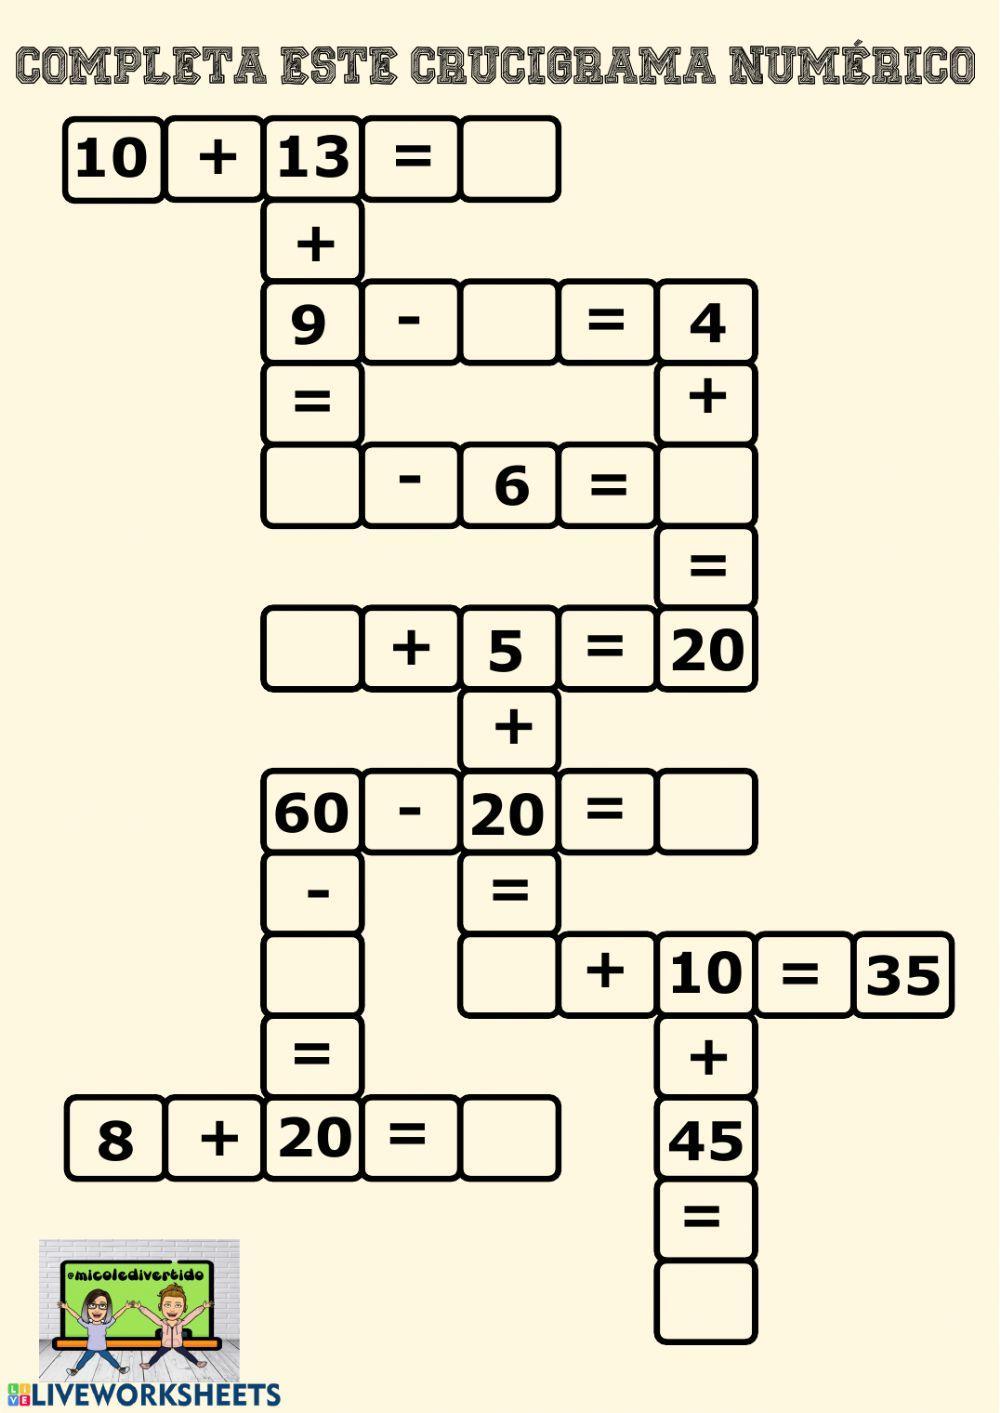 Crucigrama numérico